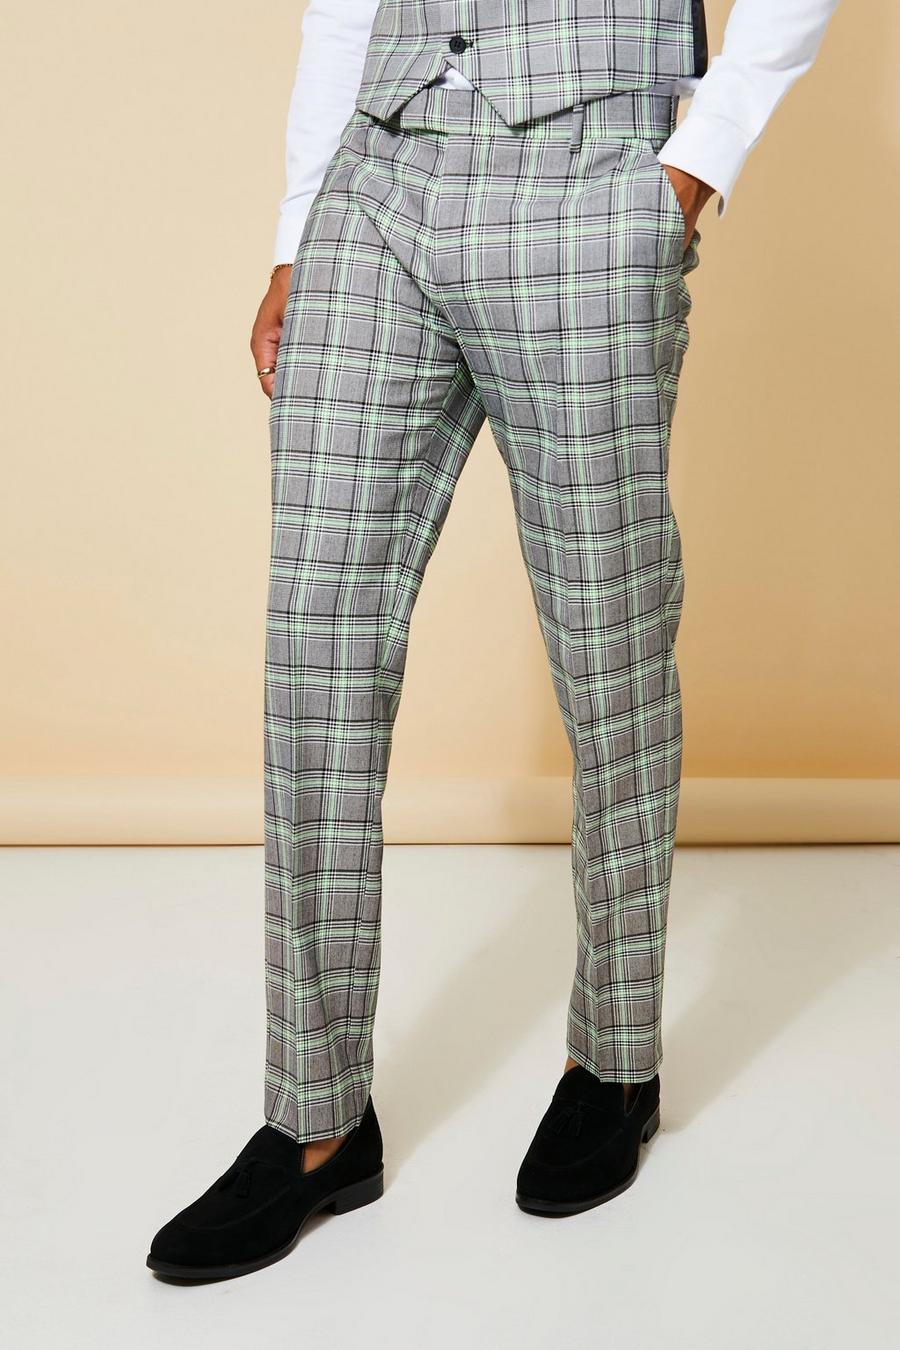 Pantaloni completo Slim Fit a quadri in colori fluo, Neon-green fluo